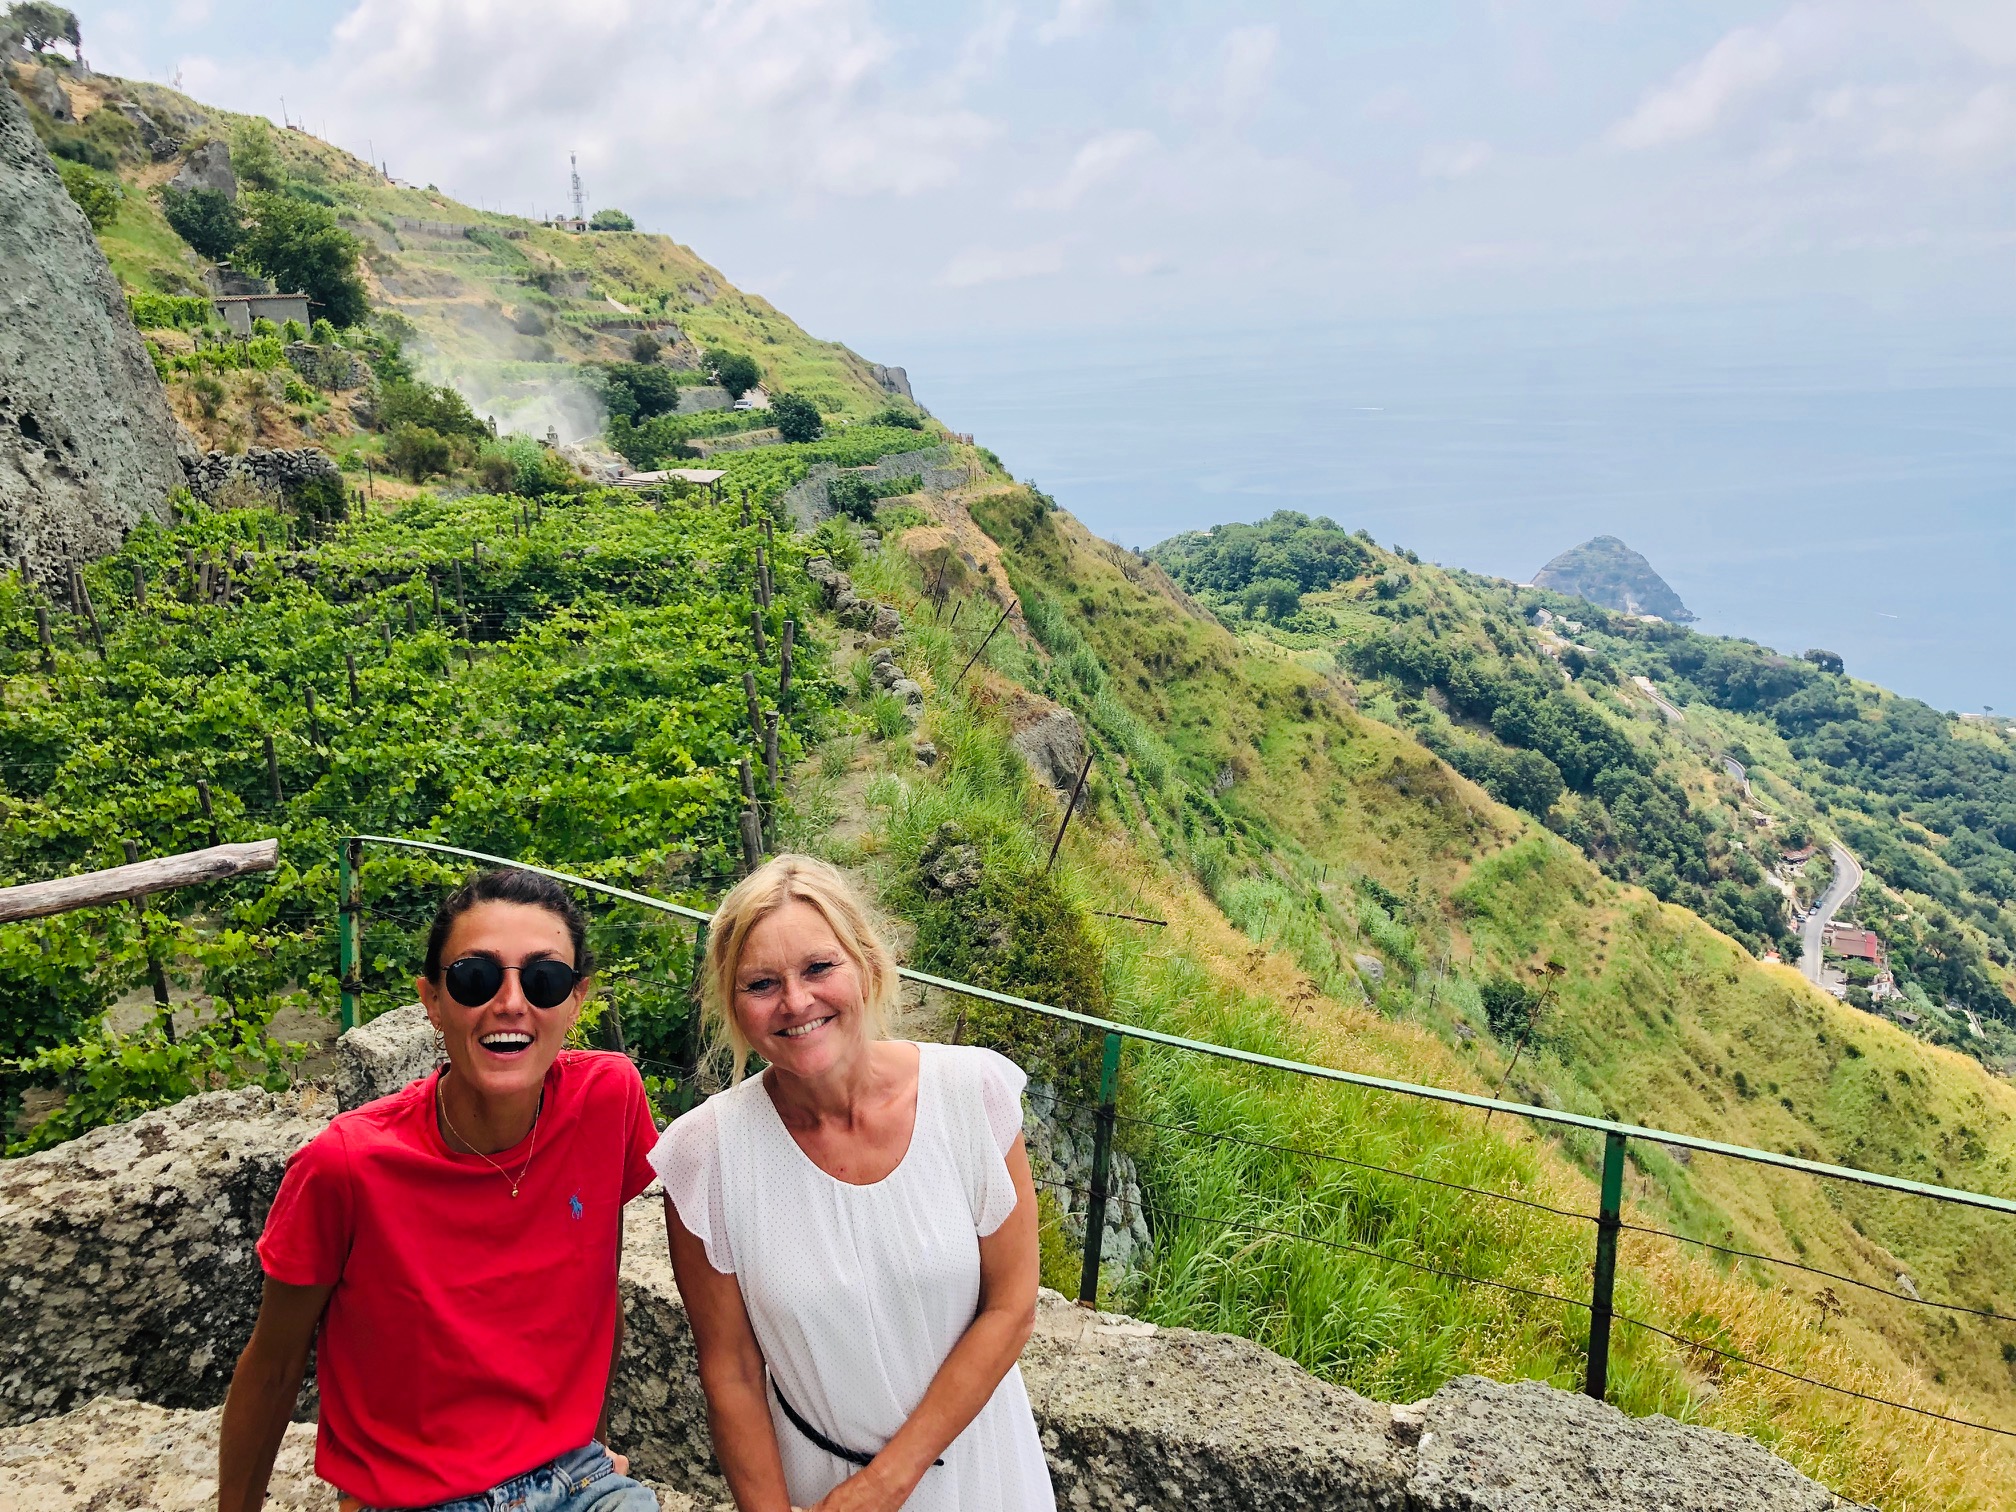 Ischia – et paradis for vin og ferie